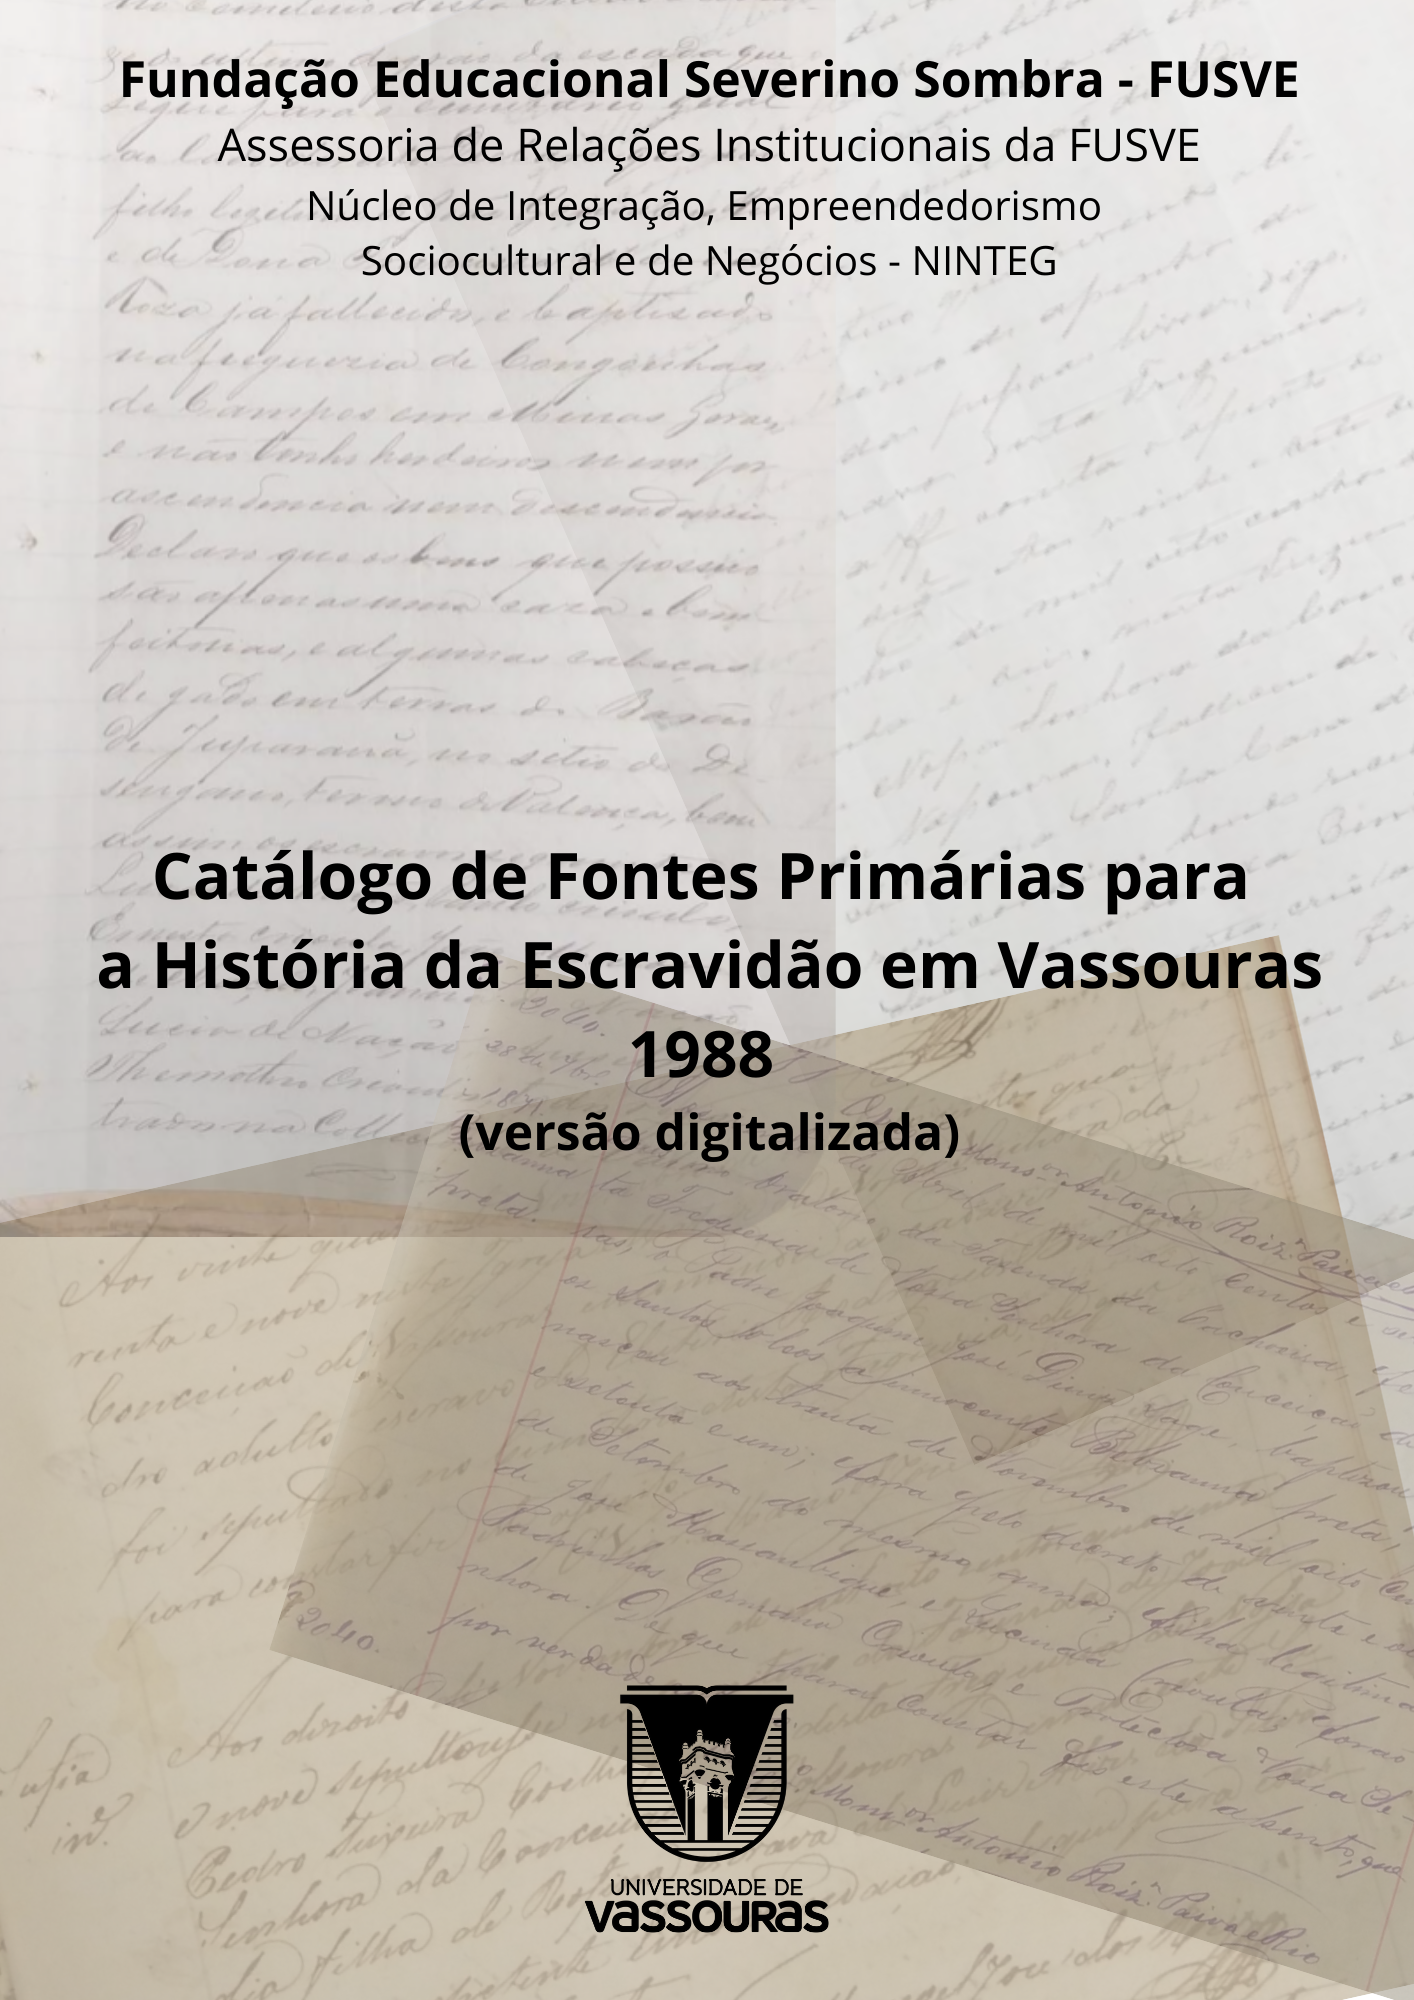 					Visualizar 2023: Catálogo de Fontes Primárias para História da Escravidão em Vassouras - v1988
				